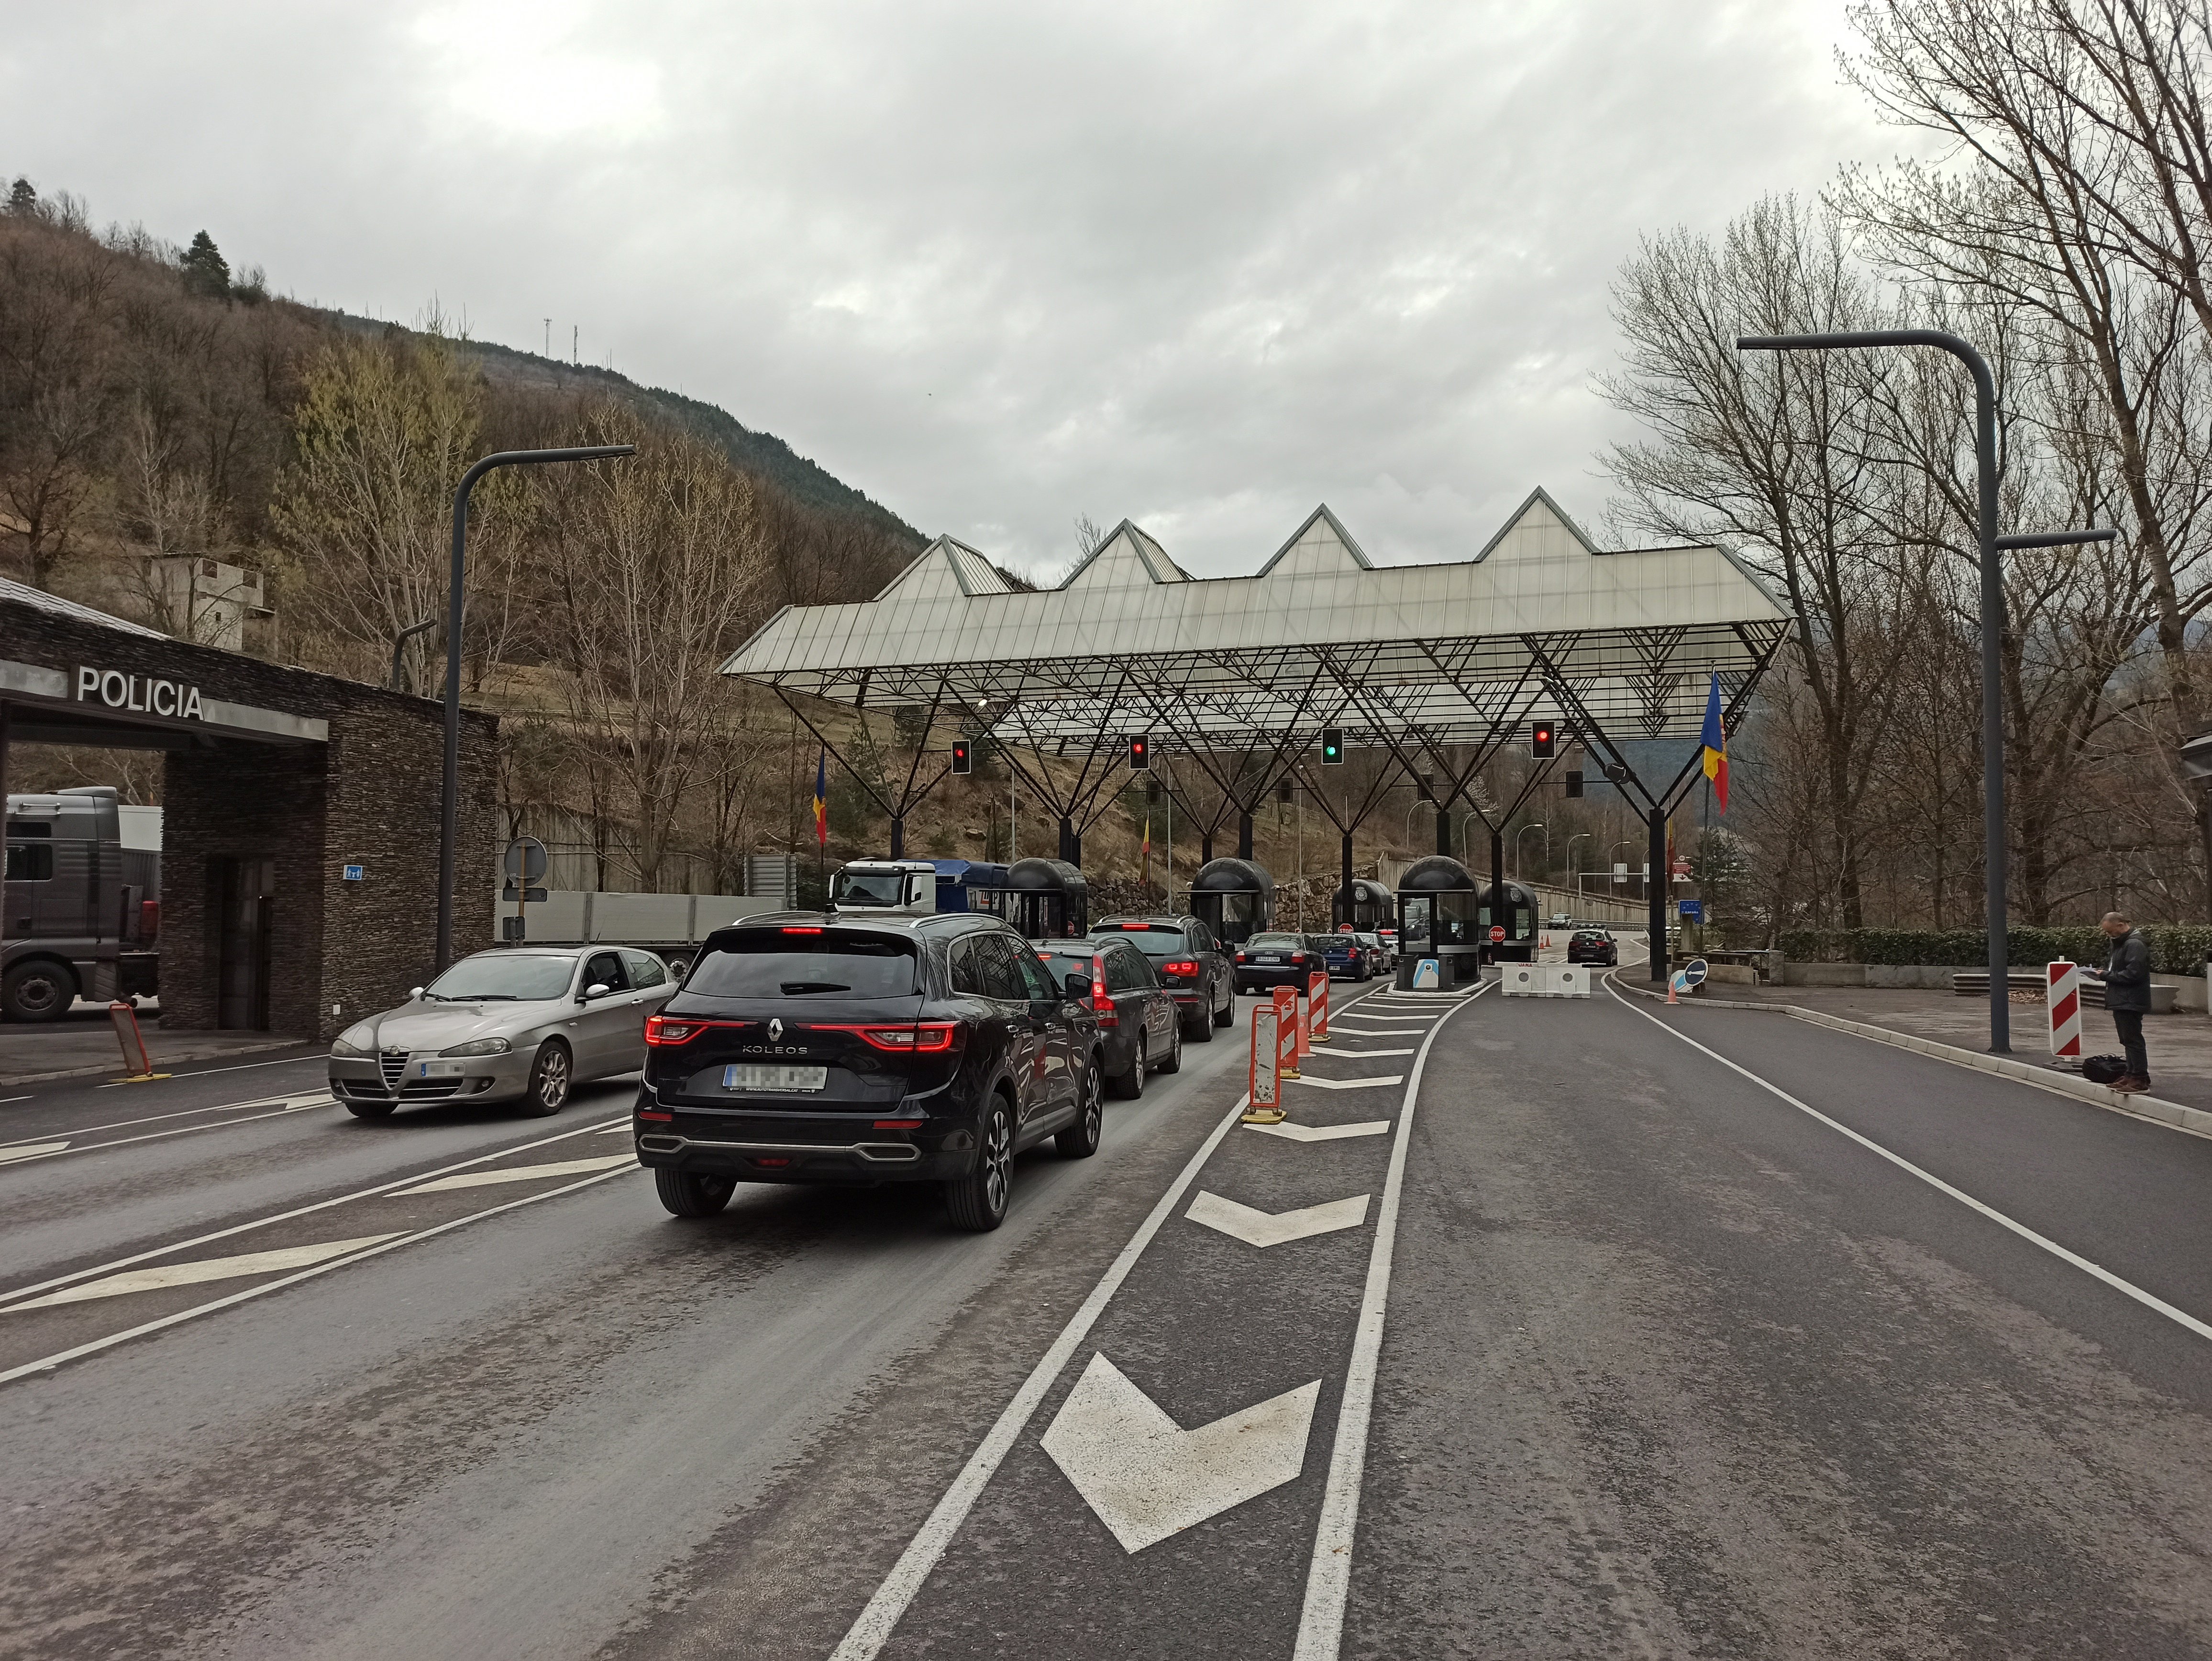 Novetats a la frontera amb Andorra: es pot entrar i sortir sense justificant